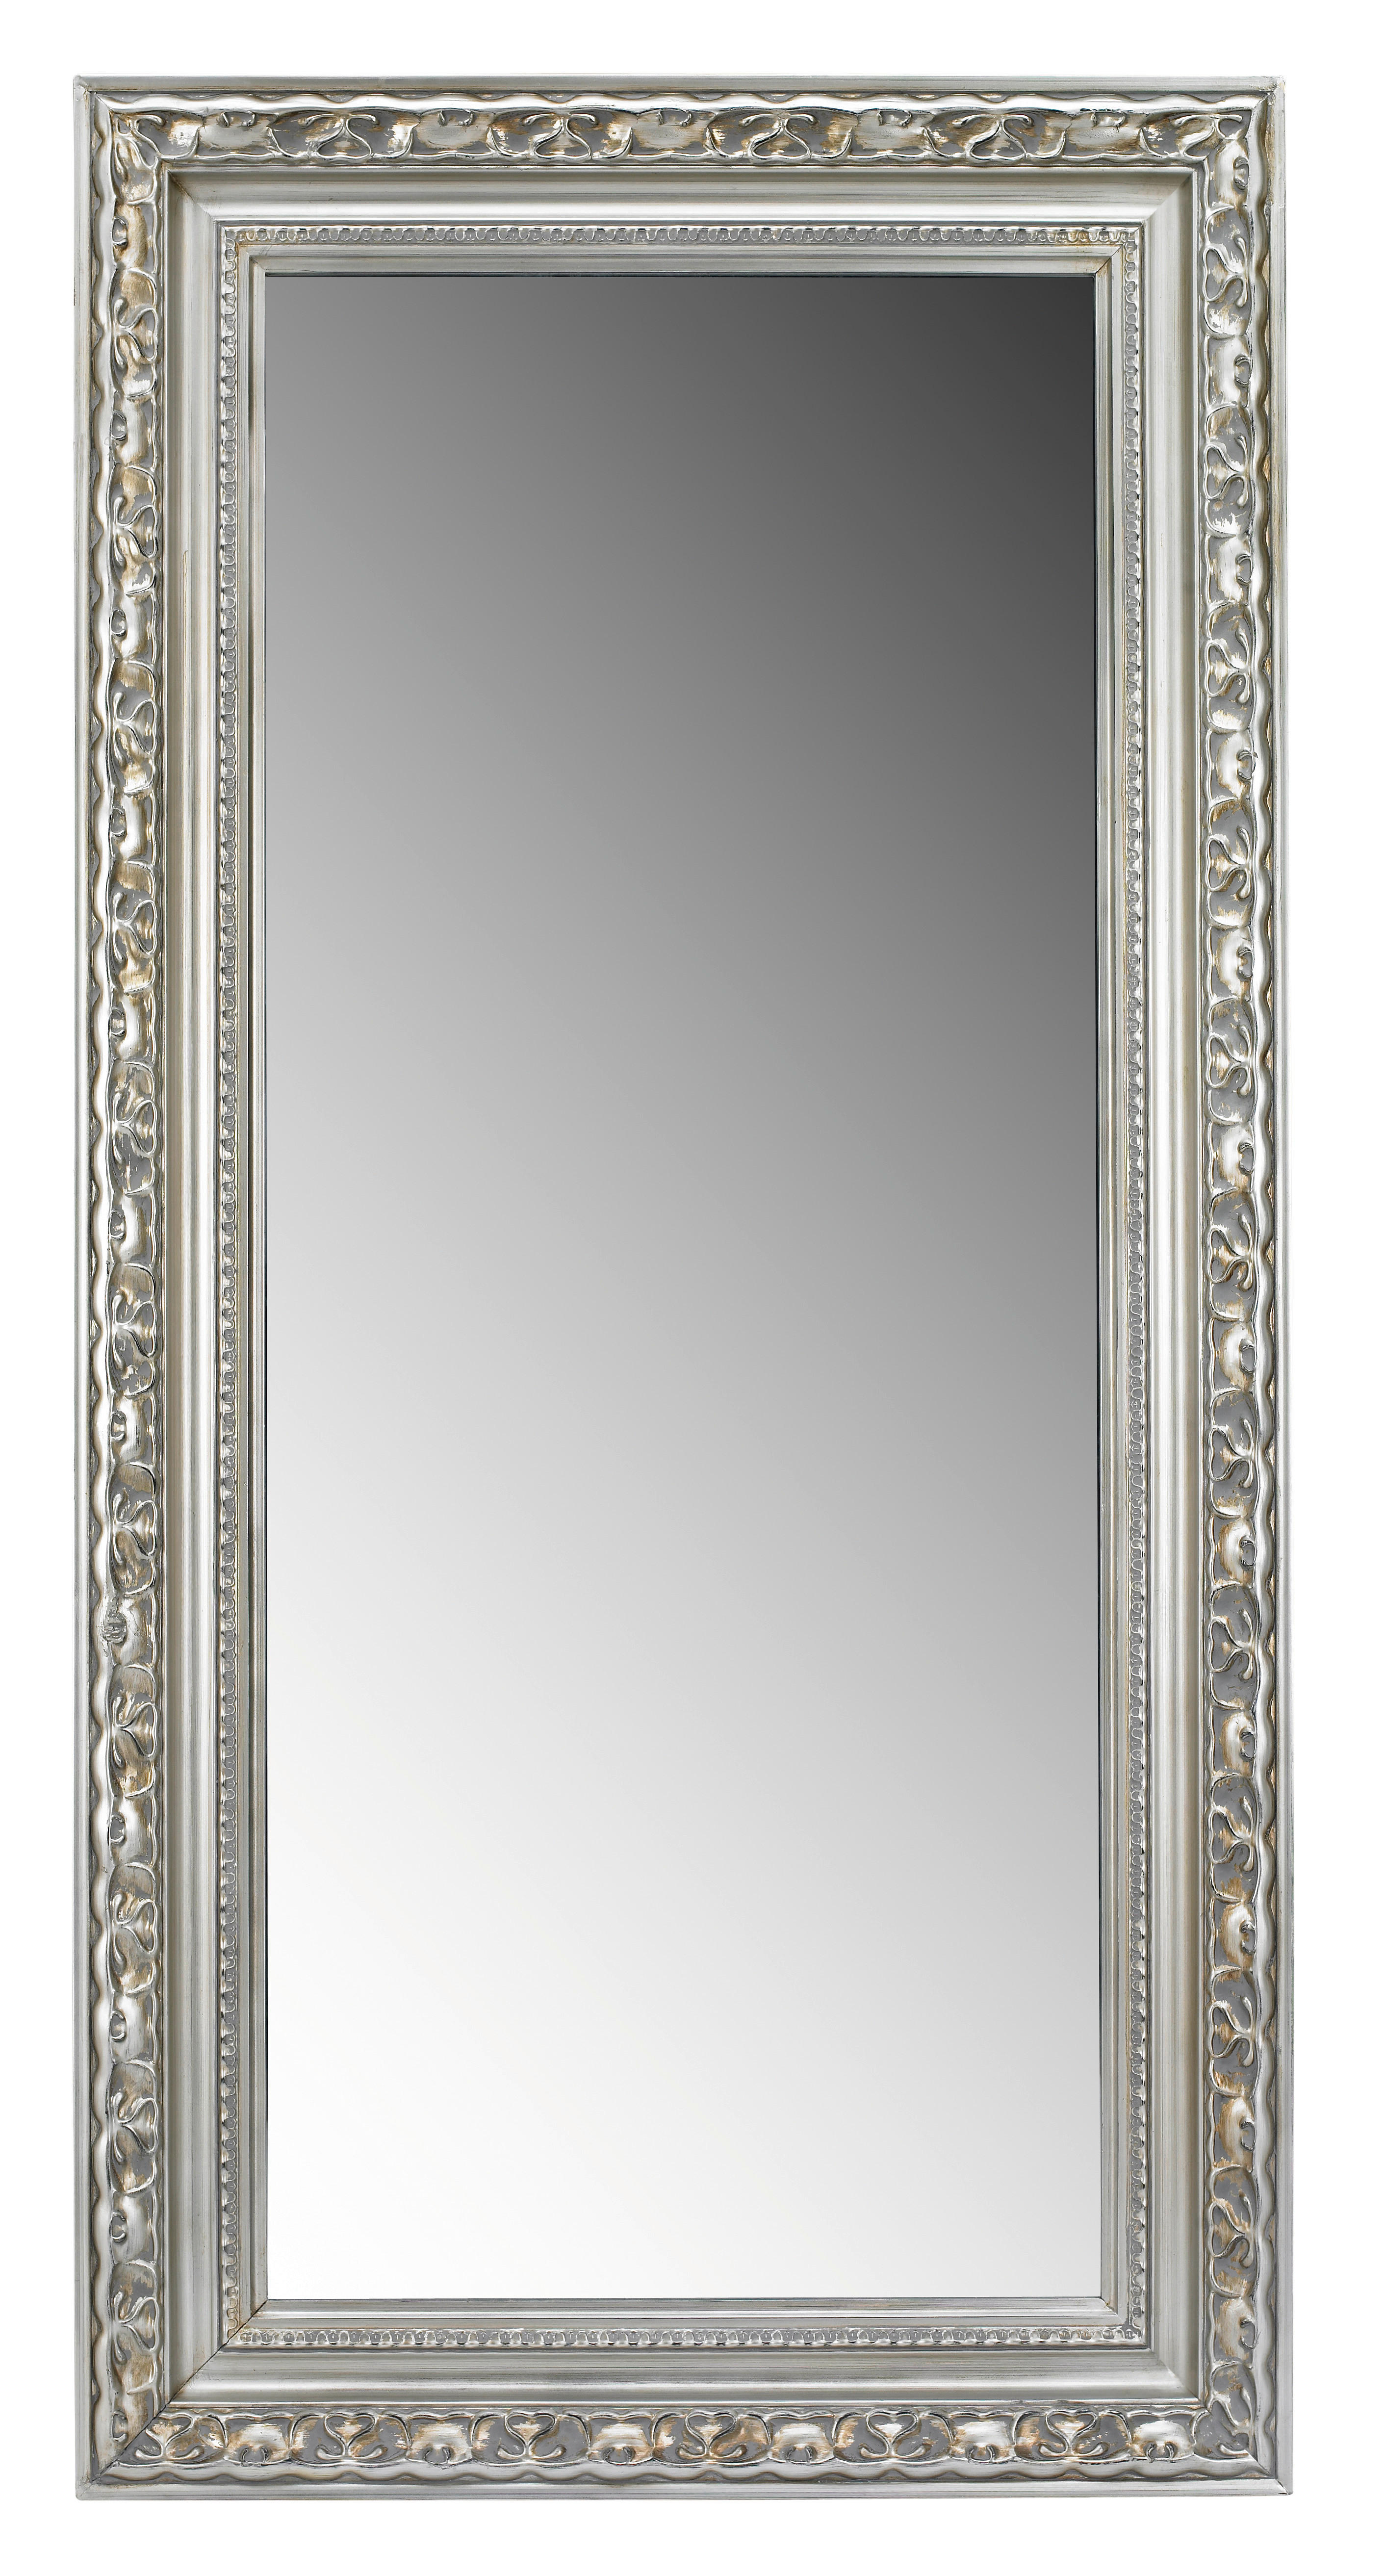 VÄGGSPEGEL 100/200/6,7 cm    - silver/guldfärgad, Lifestyle, glas/trä (100/200/6,7cm) - Landscape